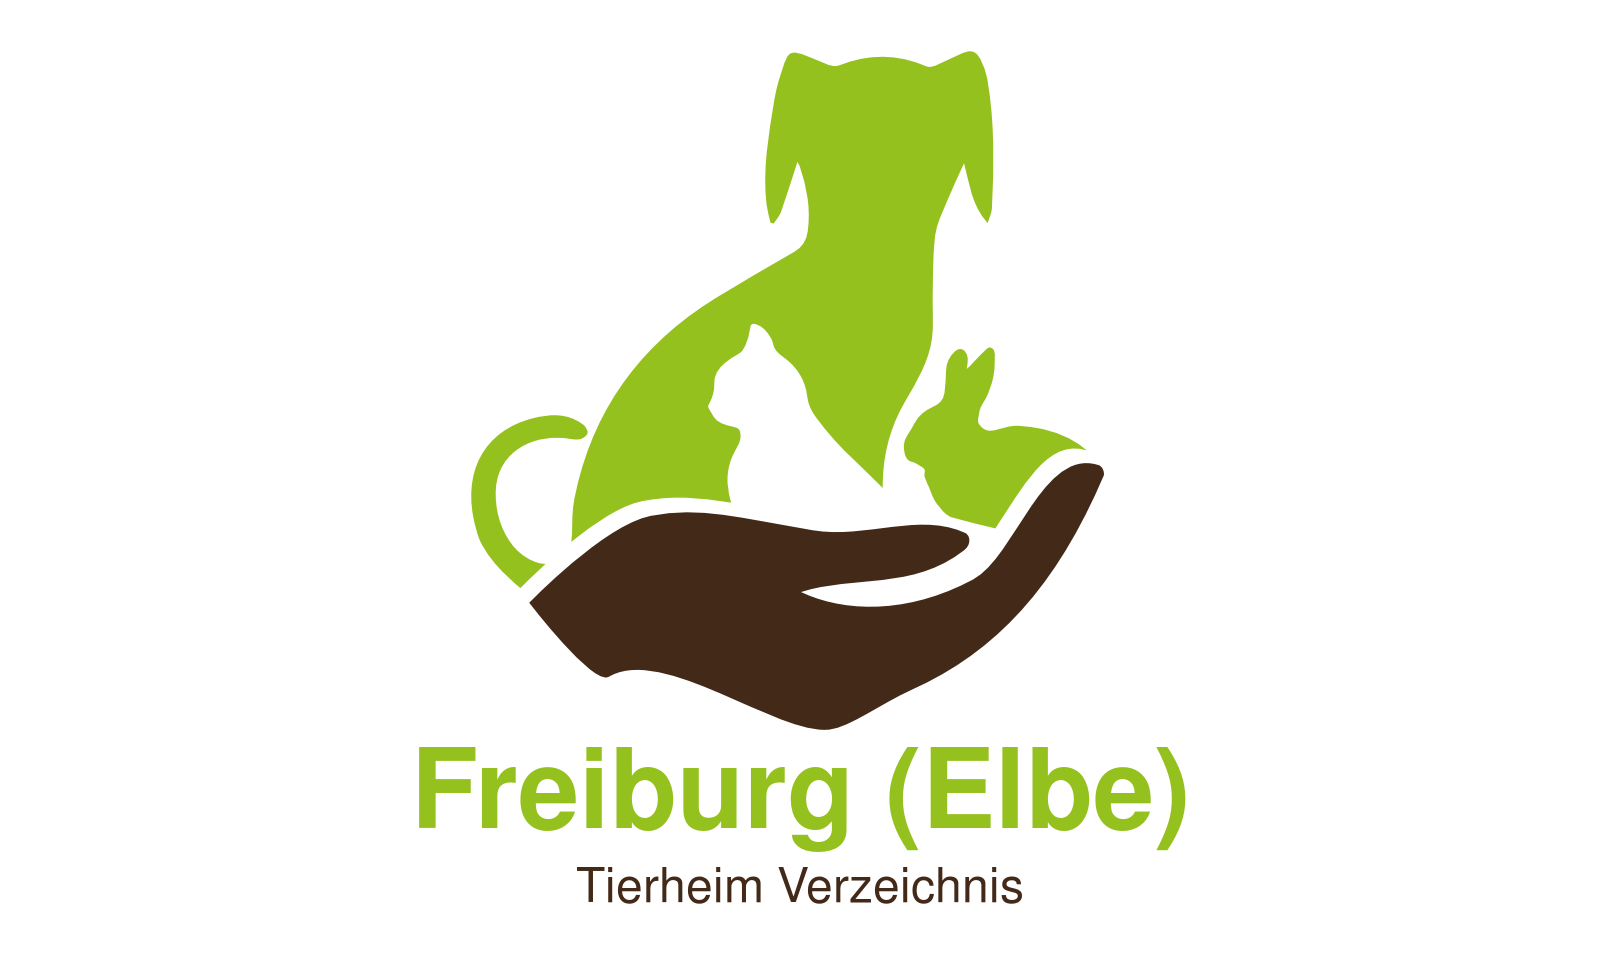 Tierheim Freiburg (Elbe)